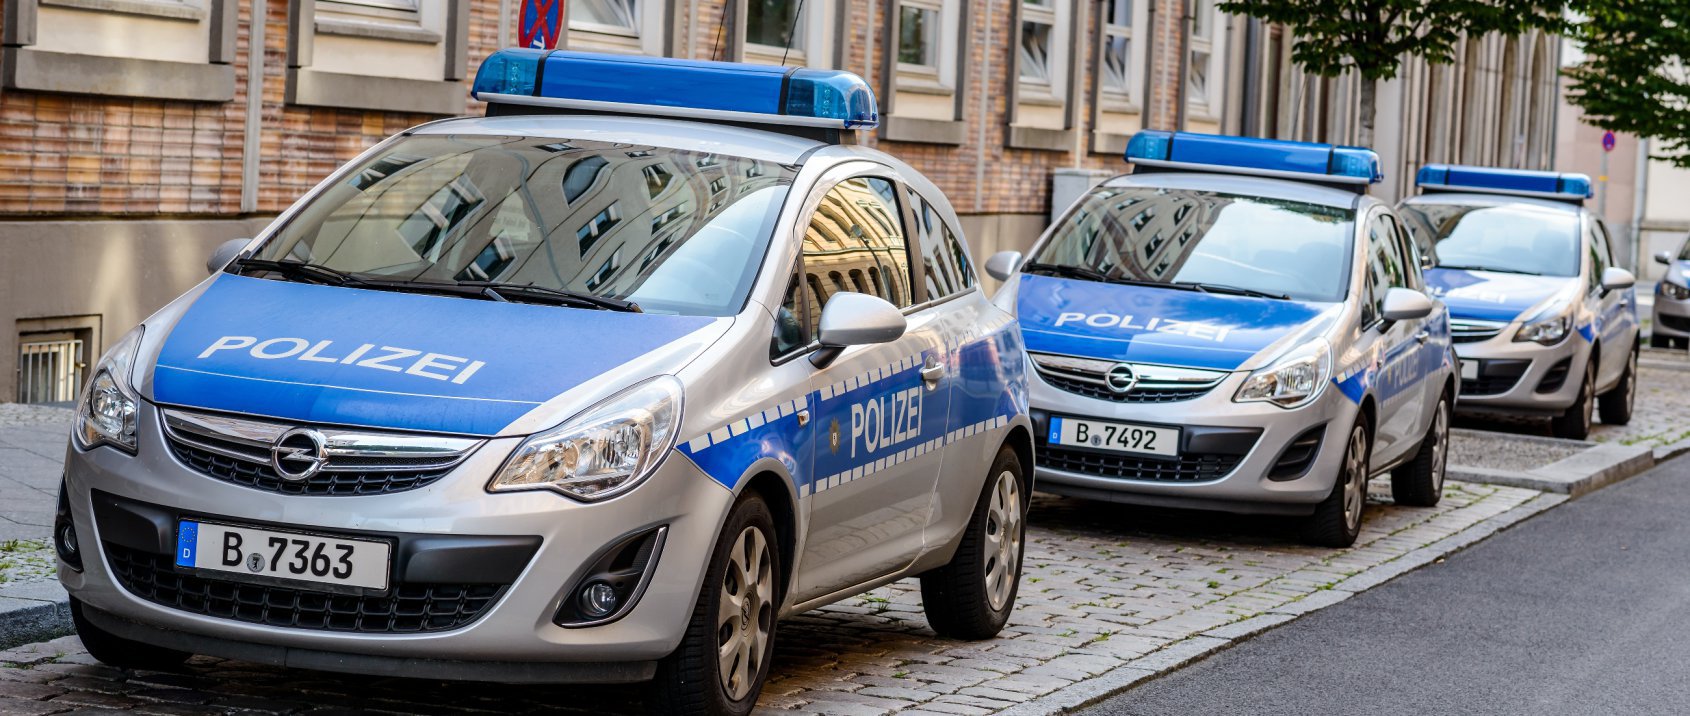 Ustawa o policji w Bawarii: nieoczekiwany protest i reakcja rządu